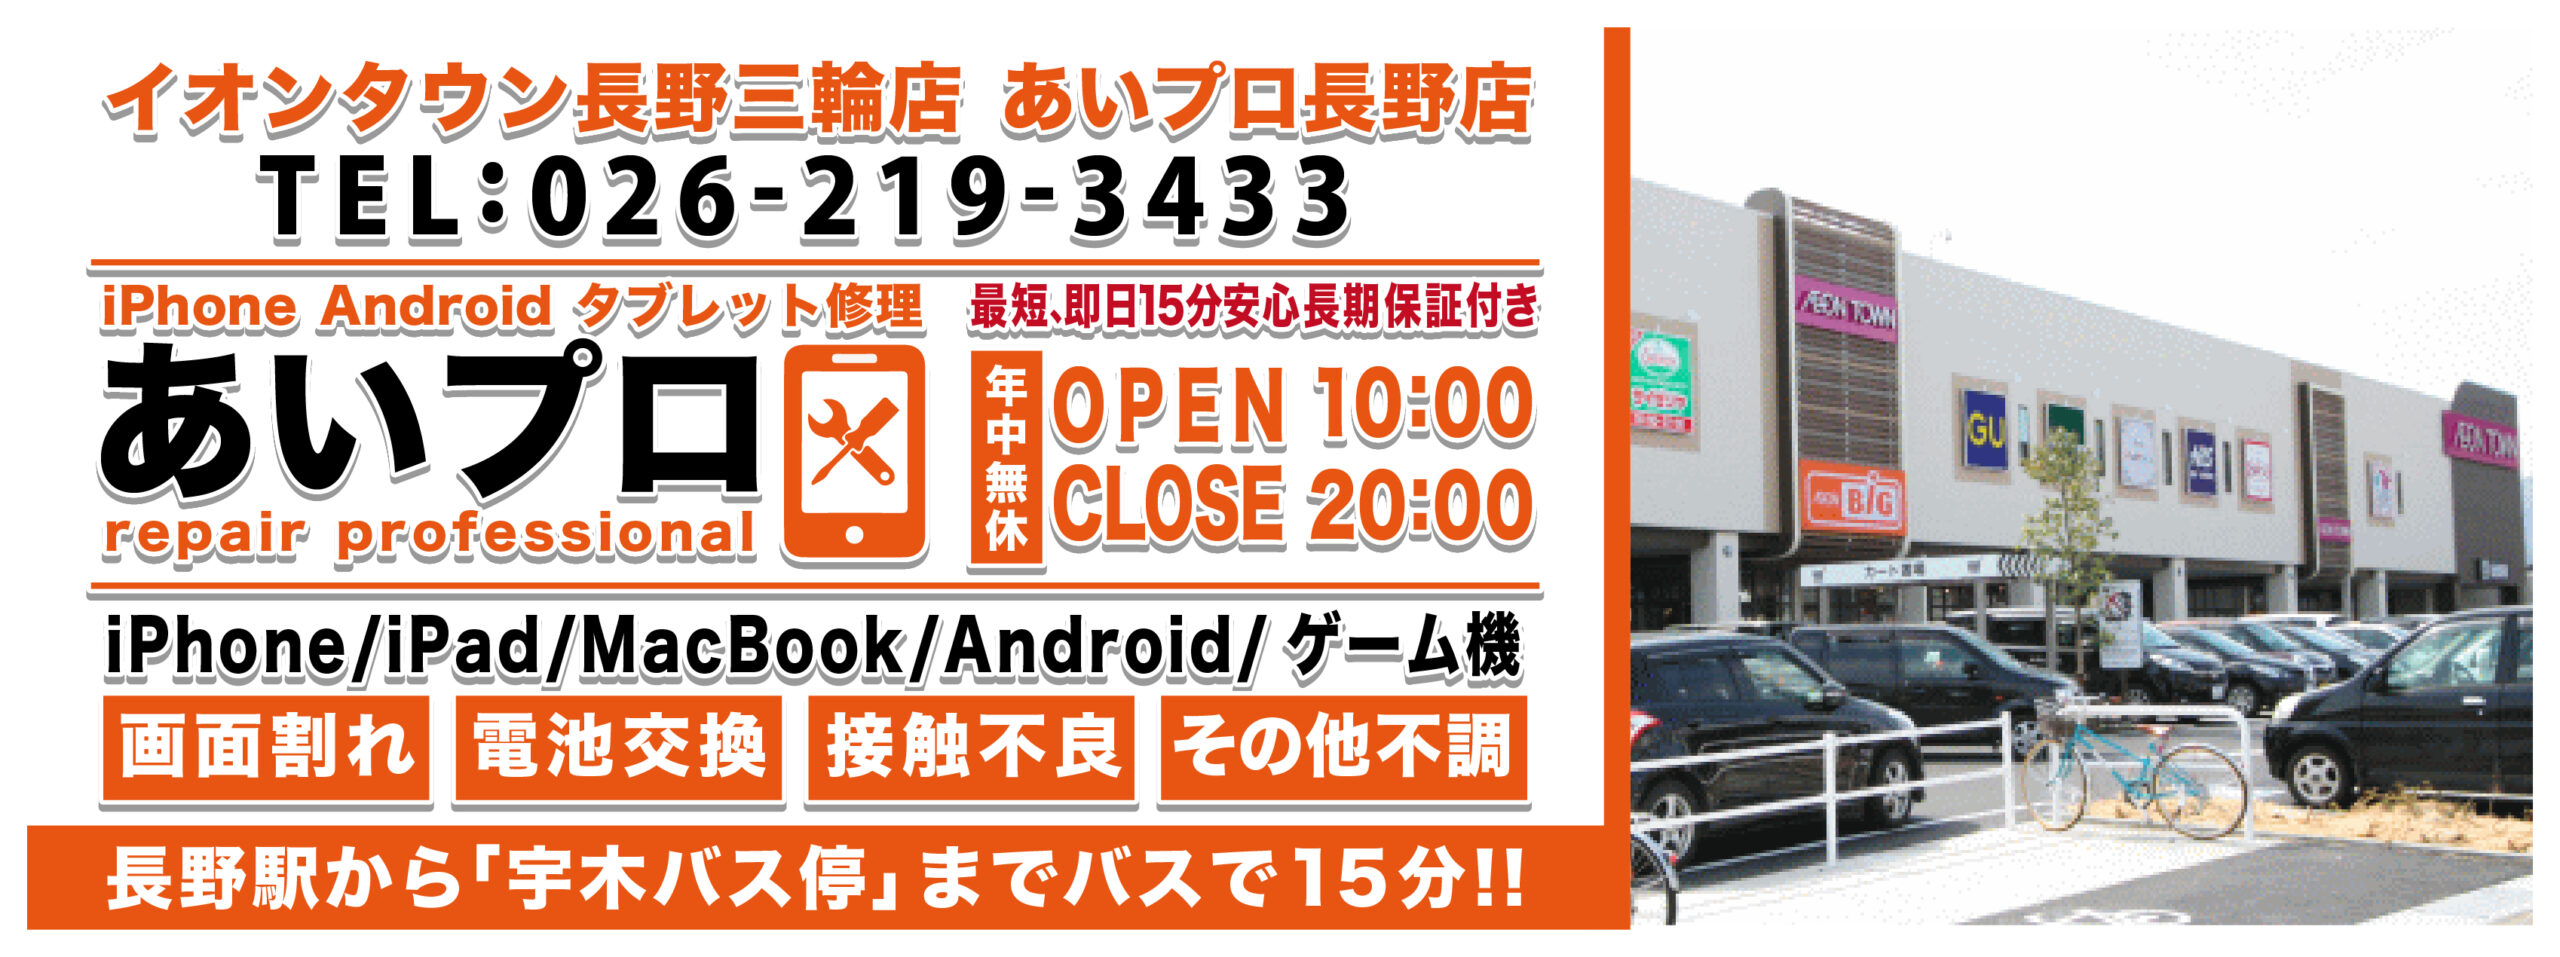 長野店 Android修理料金表 メインビジュアル 1